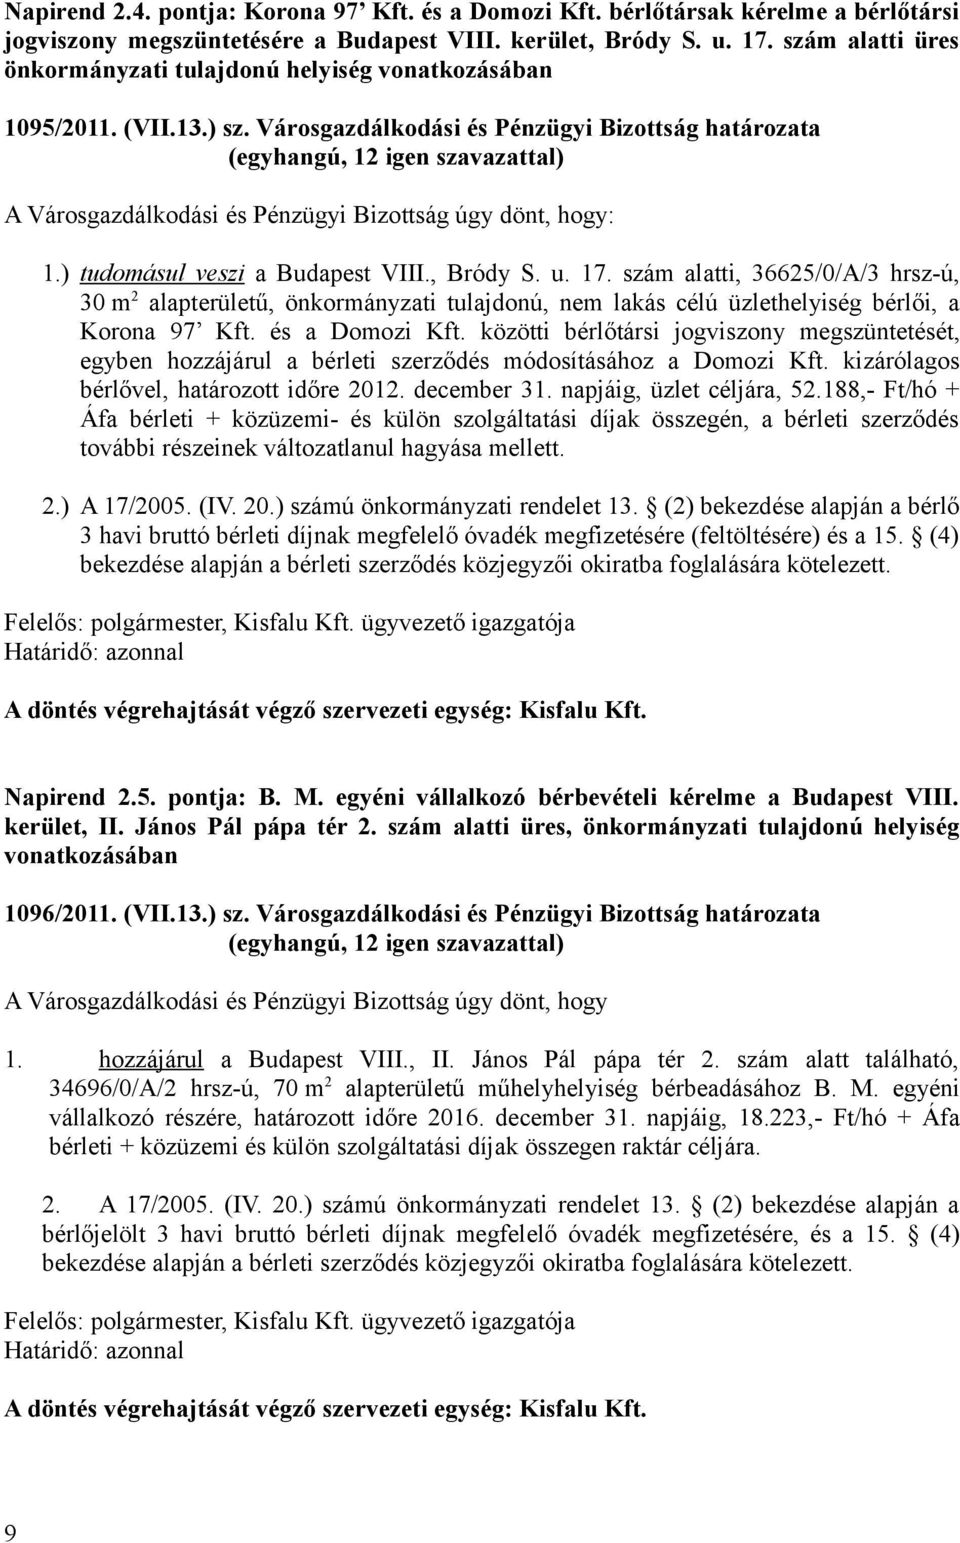 Városgazdálkodási és Pénzügyi Bizottság határozata A Városgazdálkodási és Pénzügyi Bizottság úgy dönt, hogy: 1.) tudomásul veszi a Budapest VIII., Bródy S. u. 17.